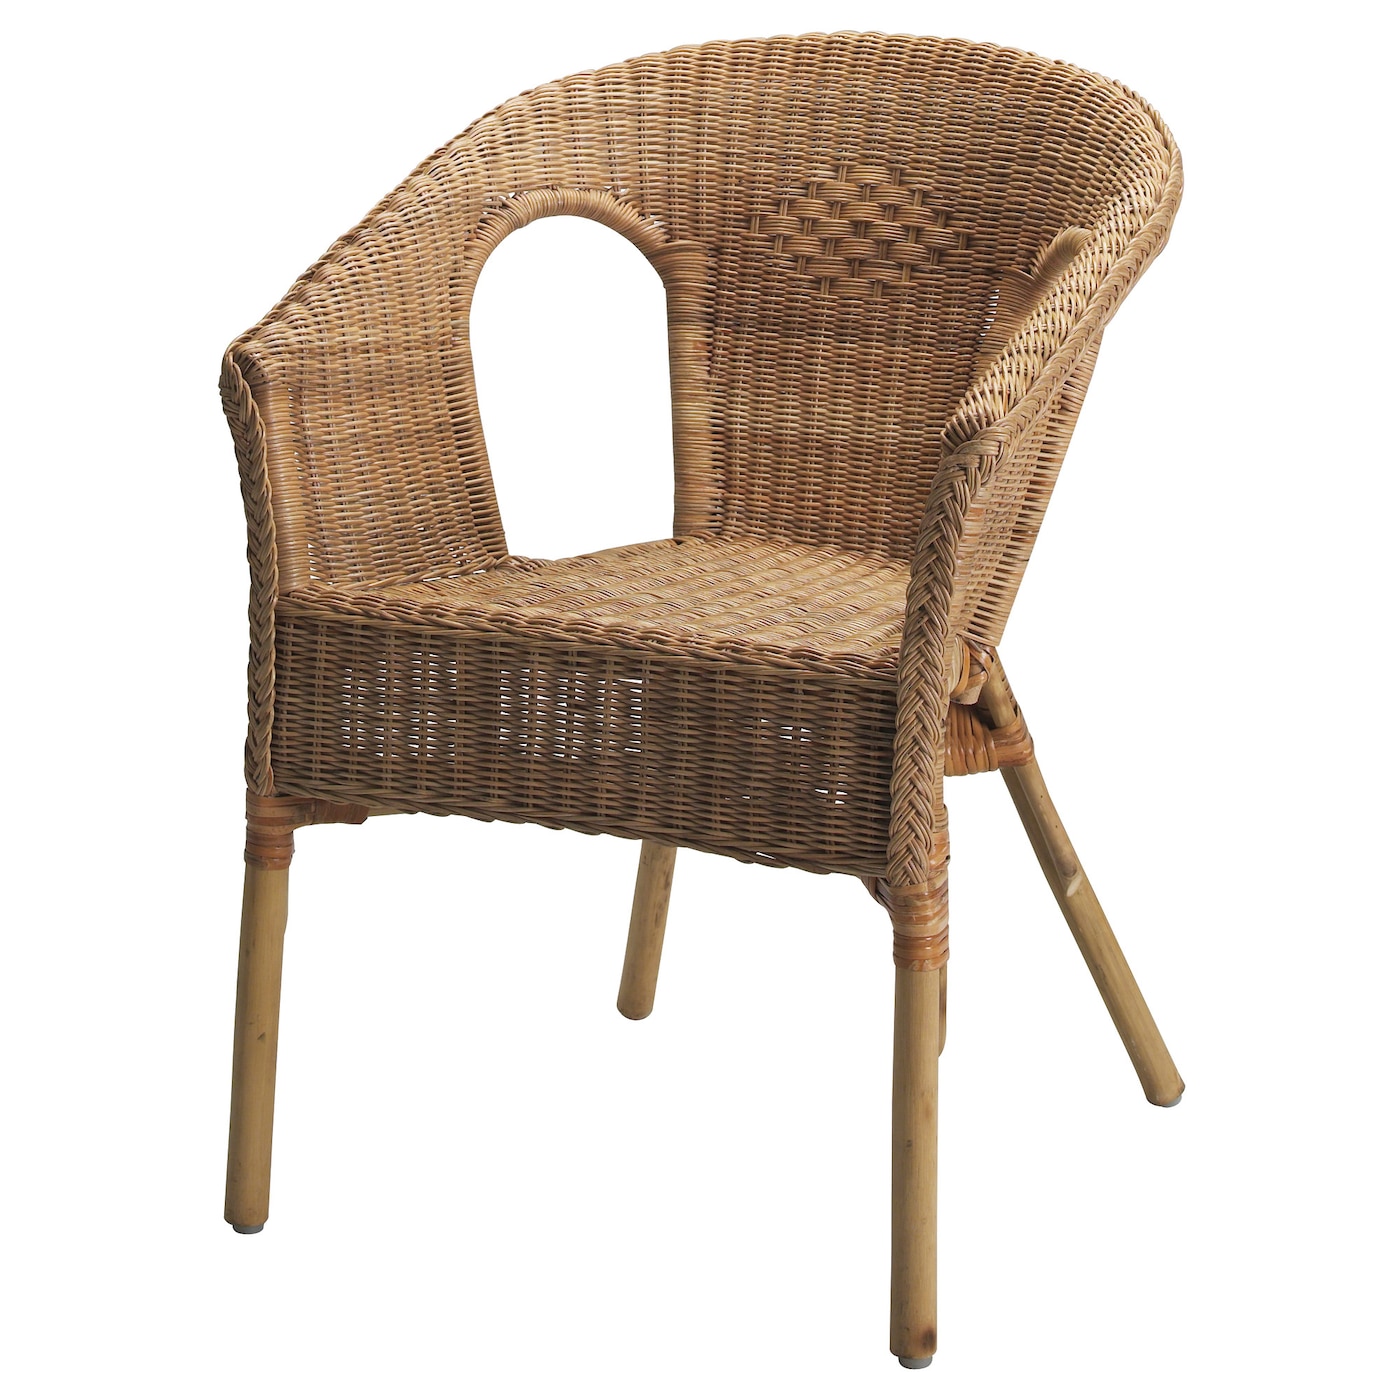 Садовое кресло - IKEA AGEN, 79х56x58 см, коричневый, АГЕН ИКЕА